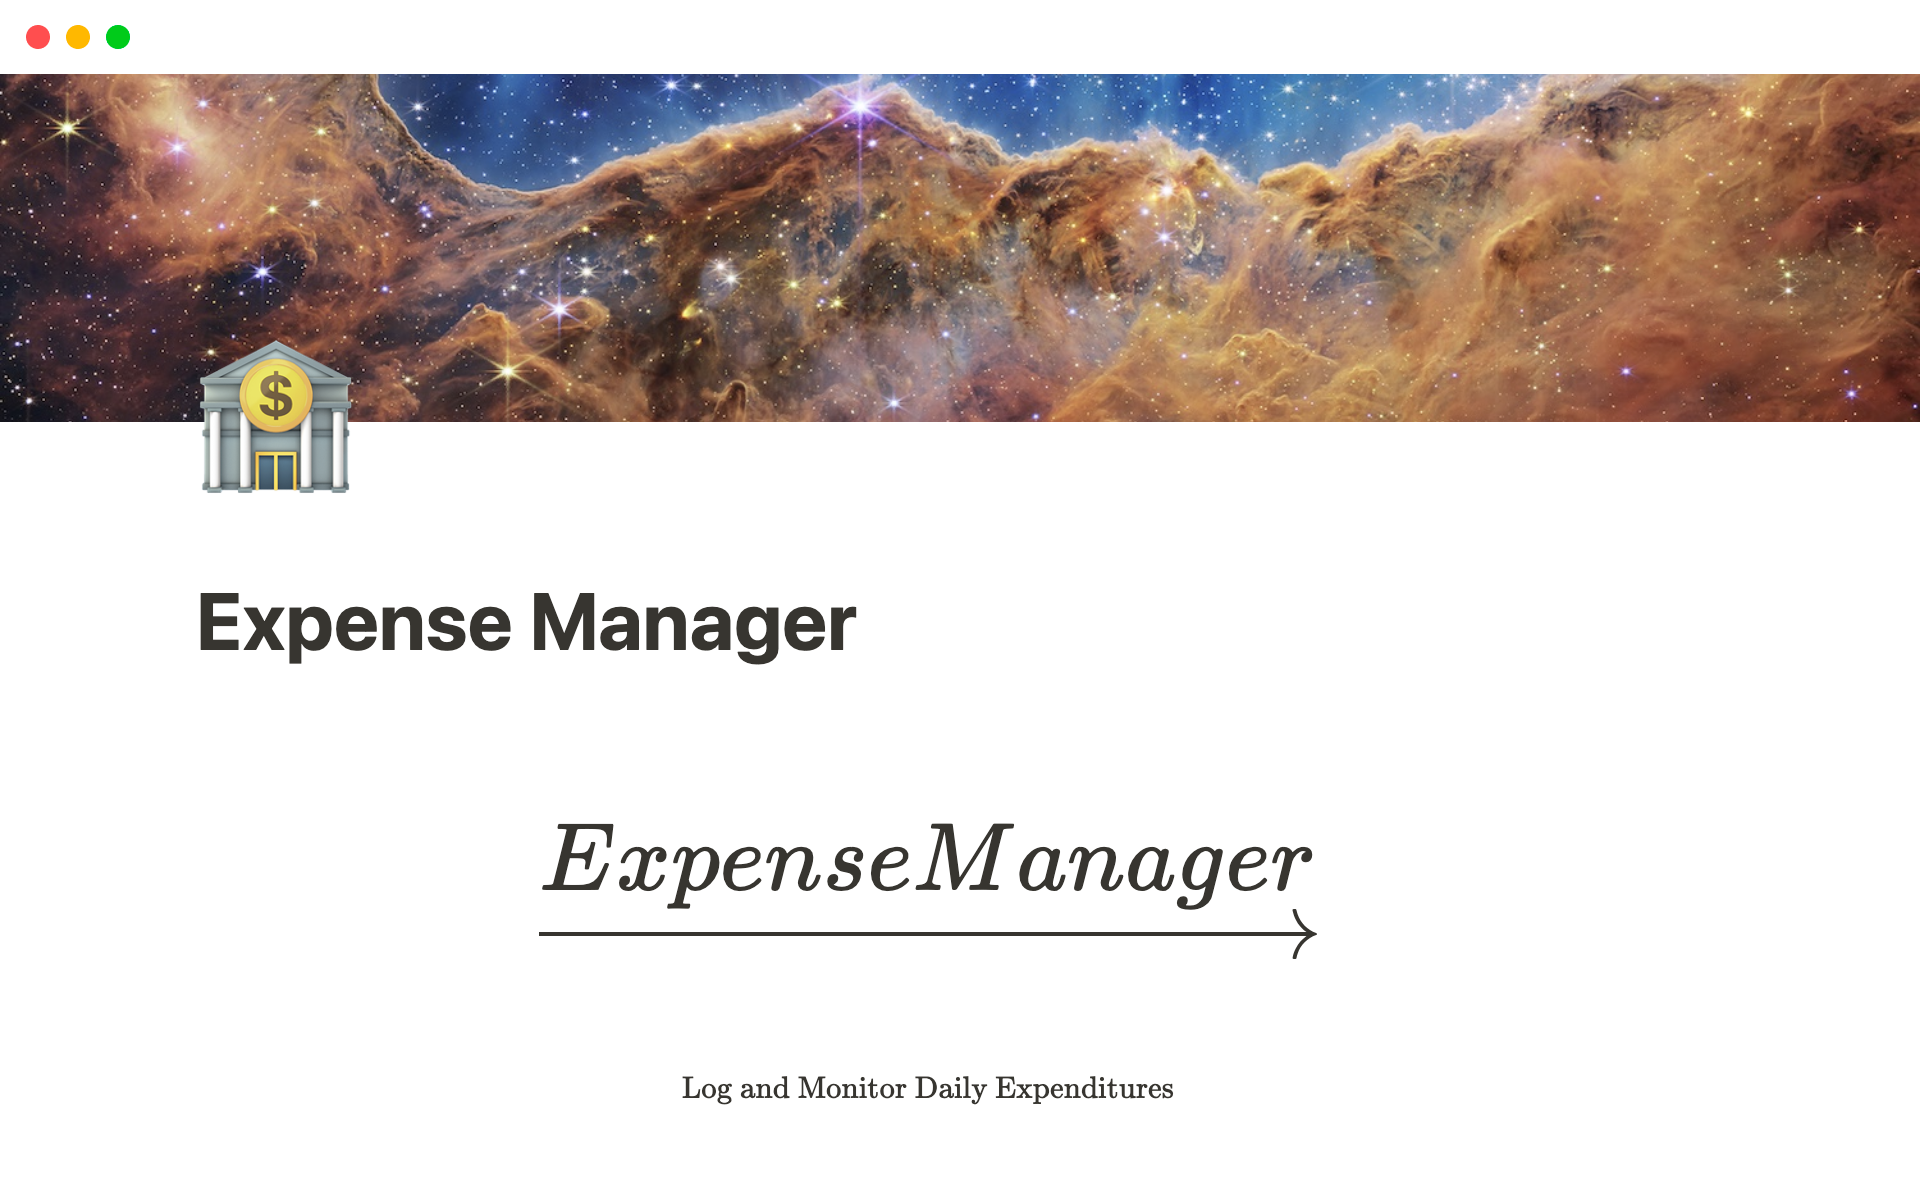 Vista previa de plantilla para Expense Manager